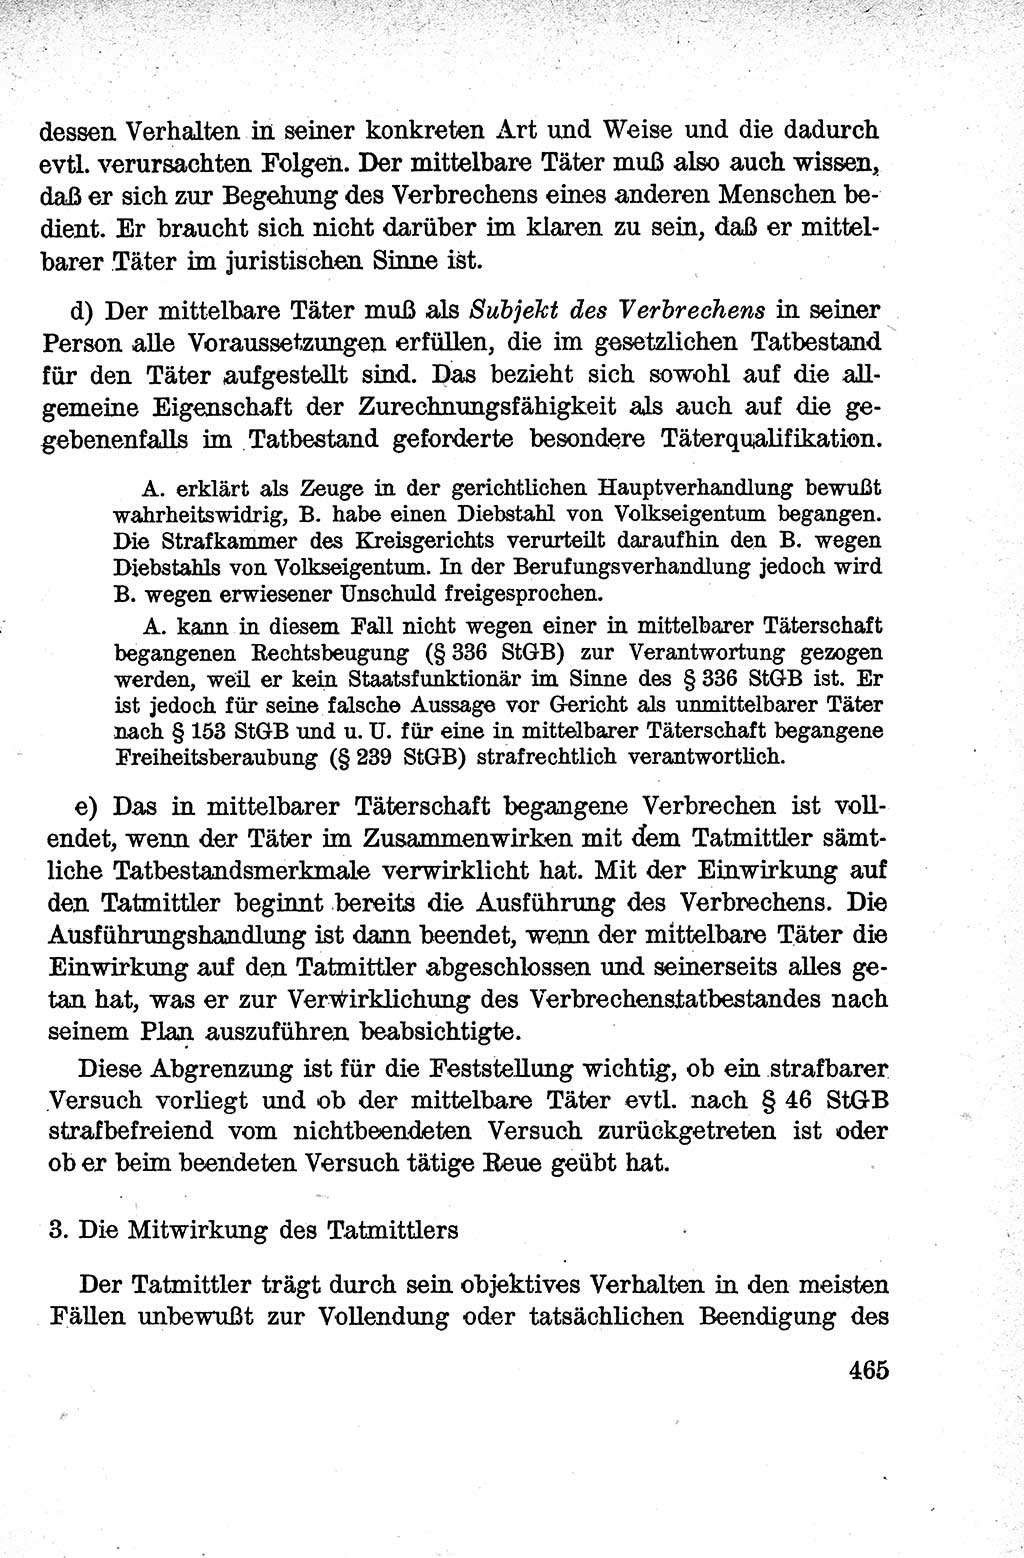 Lehrbuch des Strafrechts der Deutschen Demokratischen Republik (DDR), Allgemeiner Teil 1959, Seite 465 (Lb. Strafr. DDR AT 1959, S. 465)